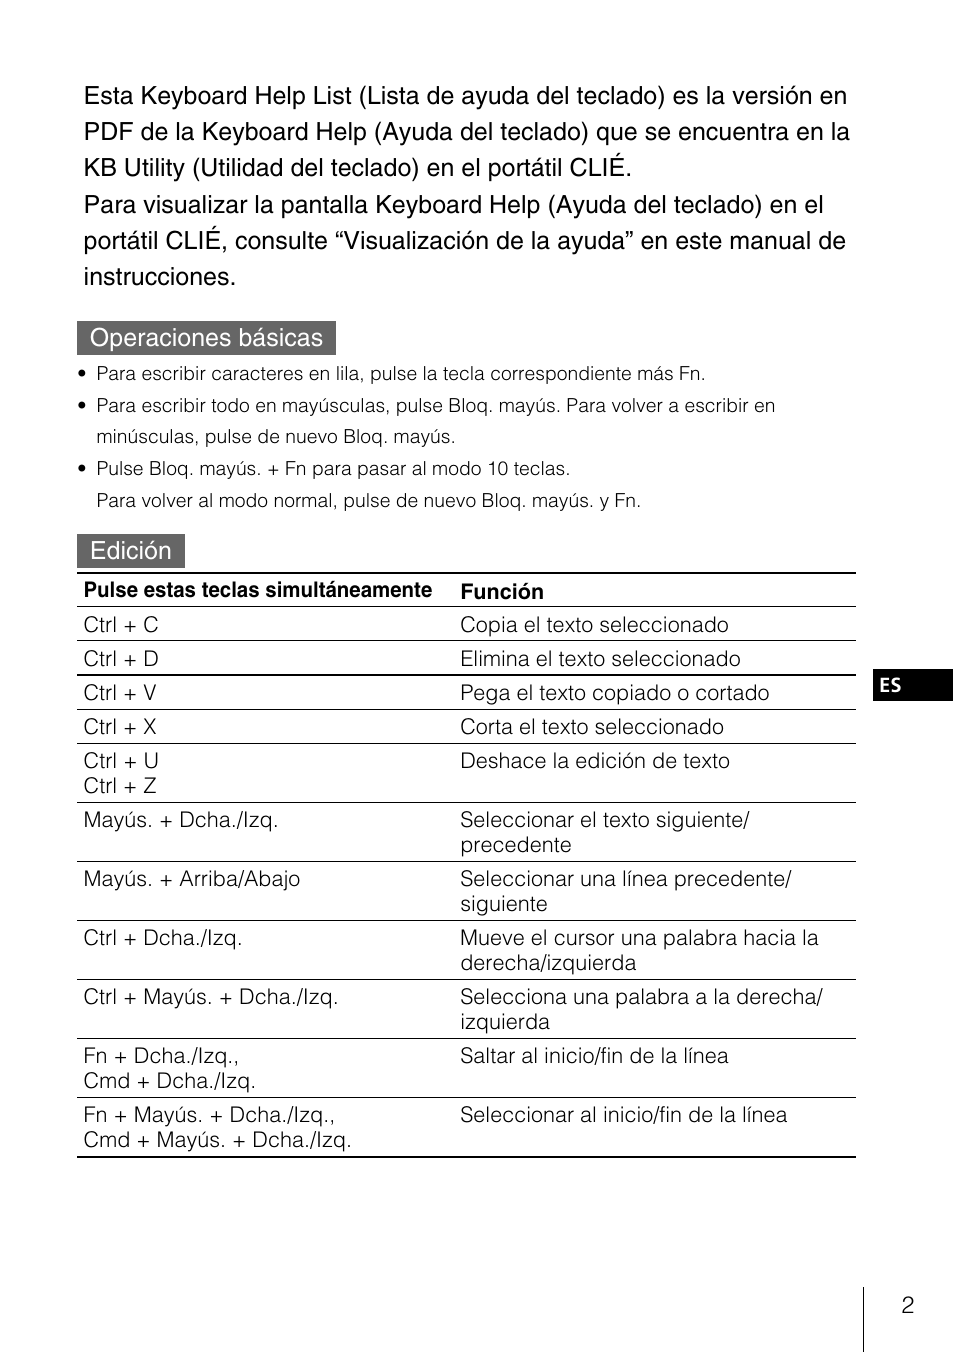 Operaciones basicas, Edicion, Lista de ayuda del teclado | Sony PEGA-KB100 User Manual | Page 17 / 24